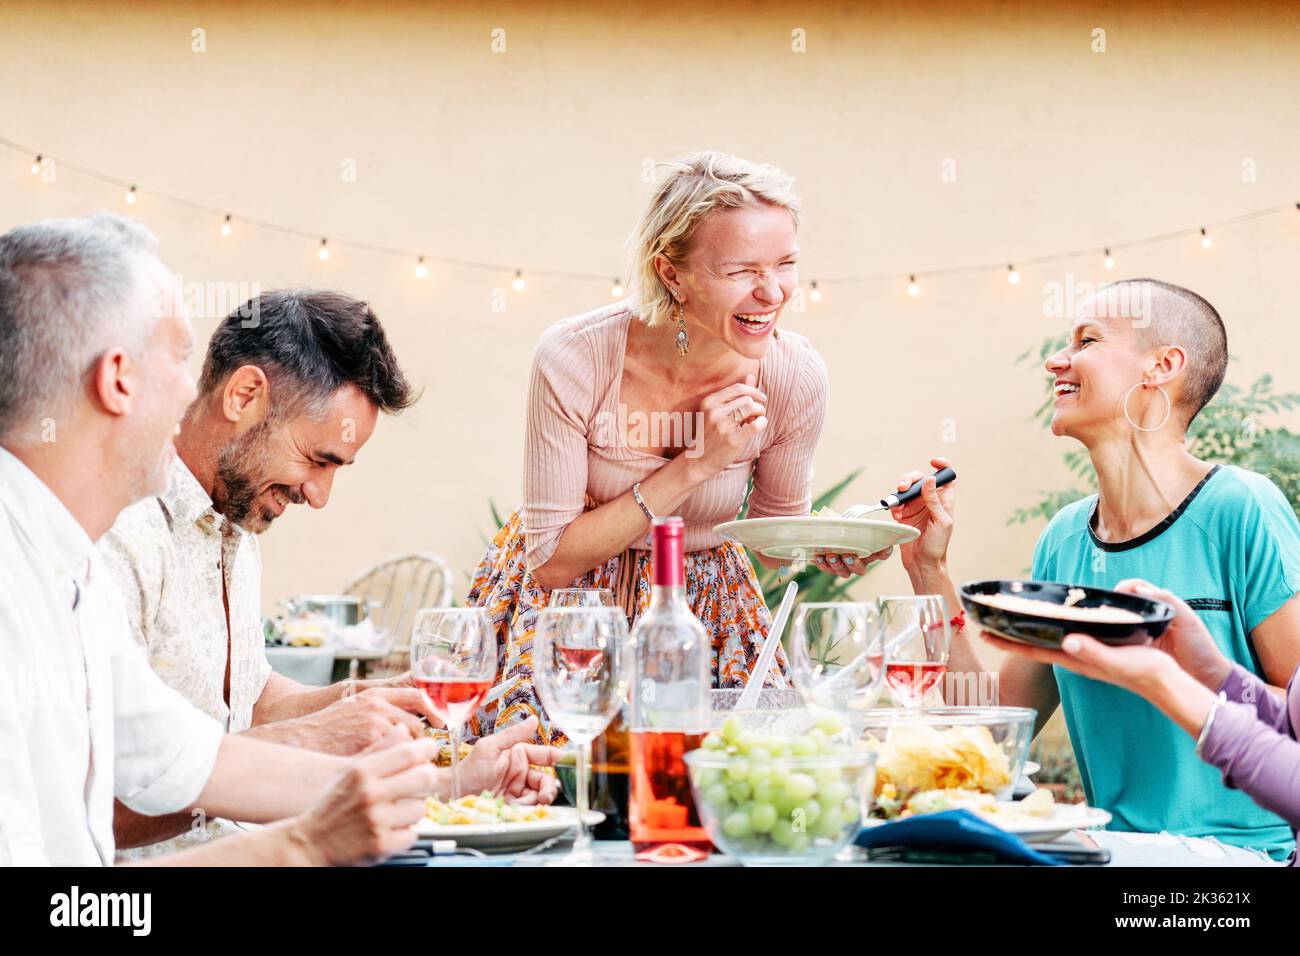 Reife Menschen feiern eine grillparty und teilen sein Essen mit seinen Freunden. Hübsche Frau bringt einen Salat auf den Tisch. Lifestyle-Konzept. Stockfoto